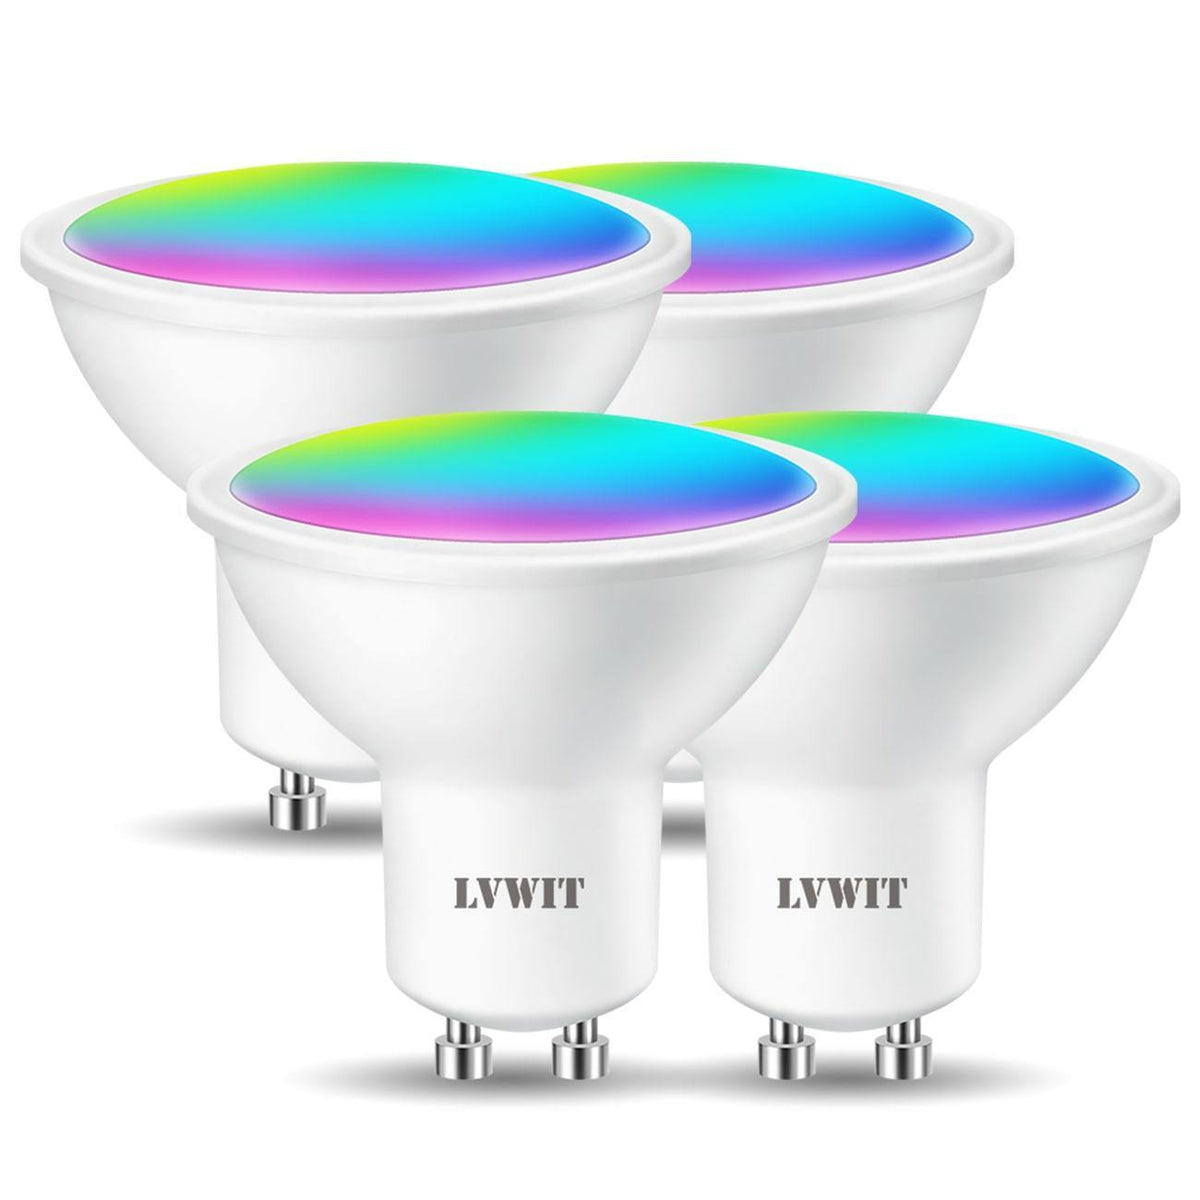 største Banquet lade som om Reflector Smart LED Bulb | GU10 350Lm 2&4PCS | LVWIT